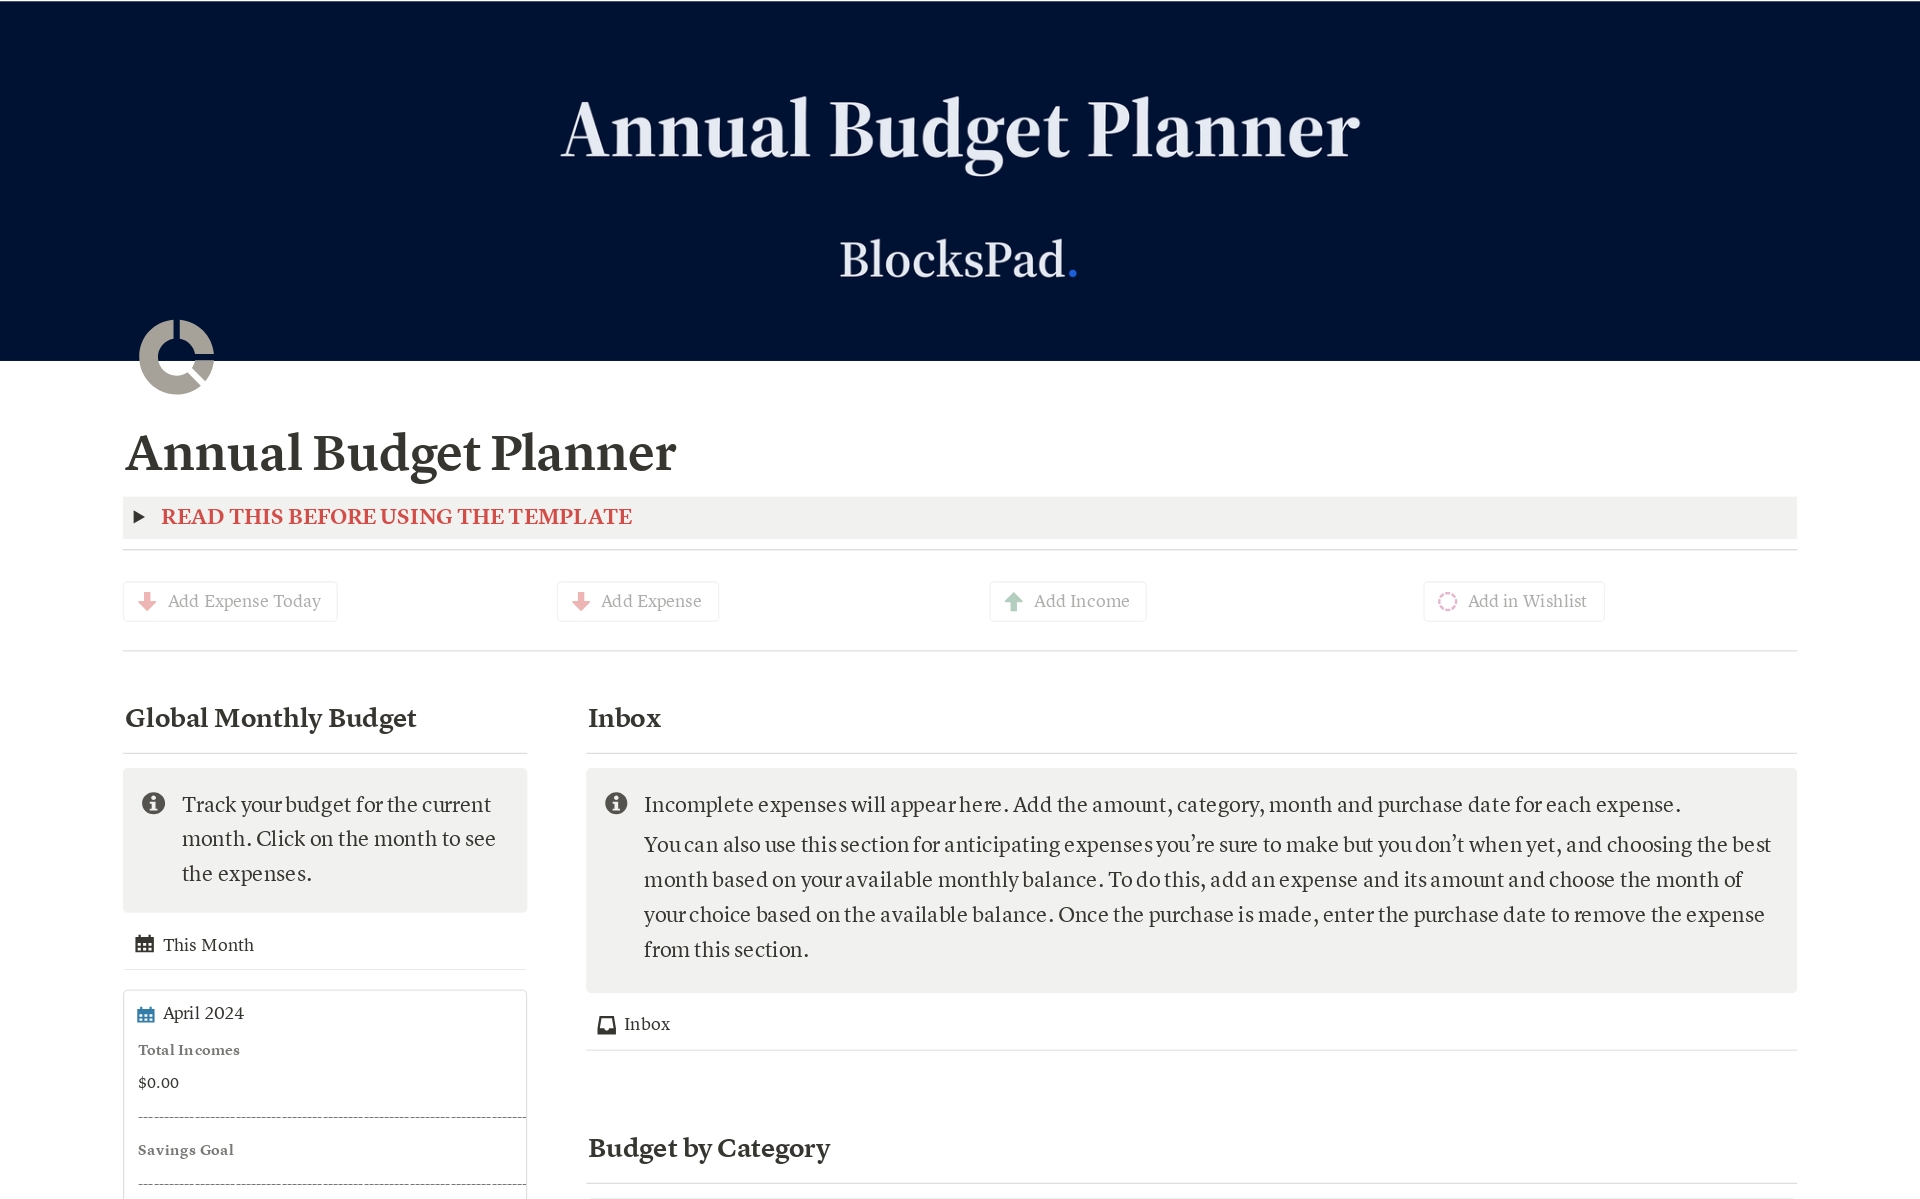 Uma prévia do modelo para Annual Budget Planner